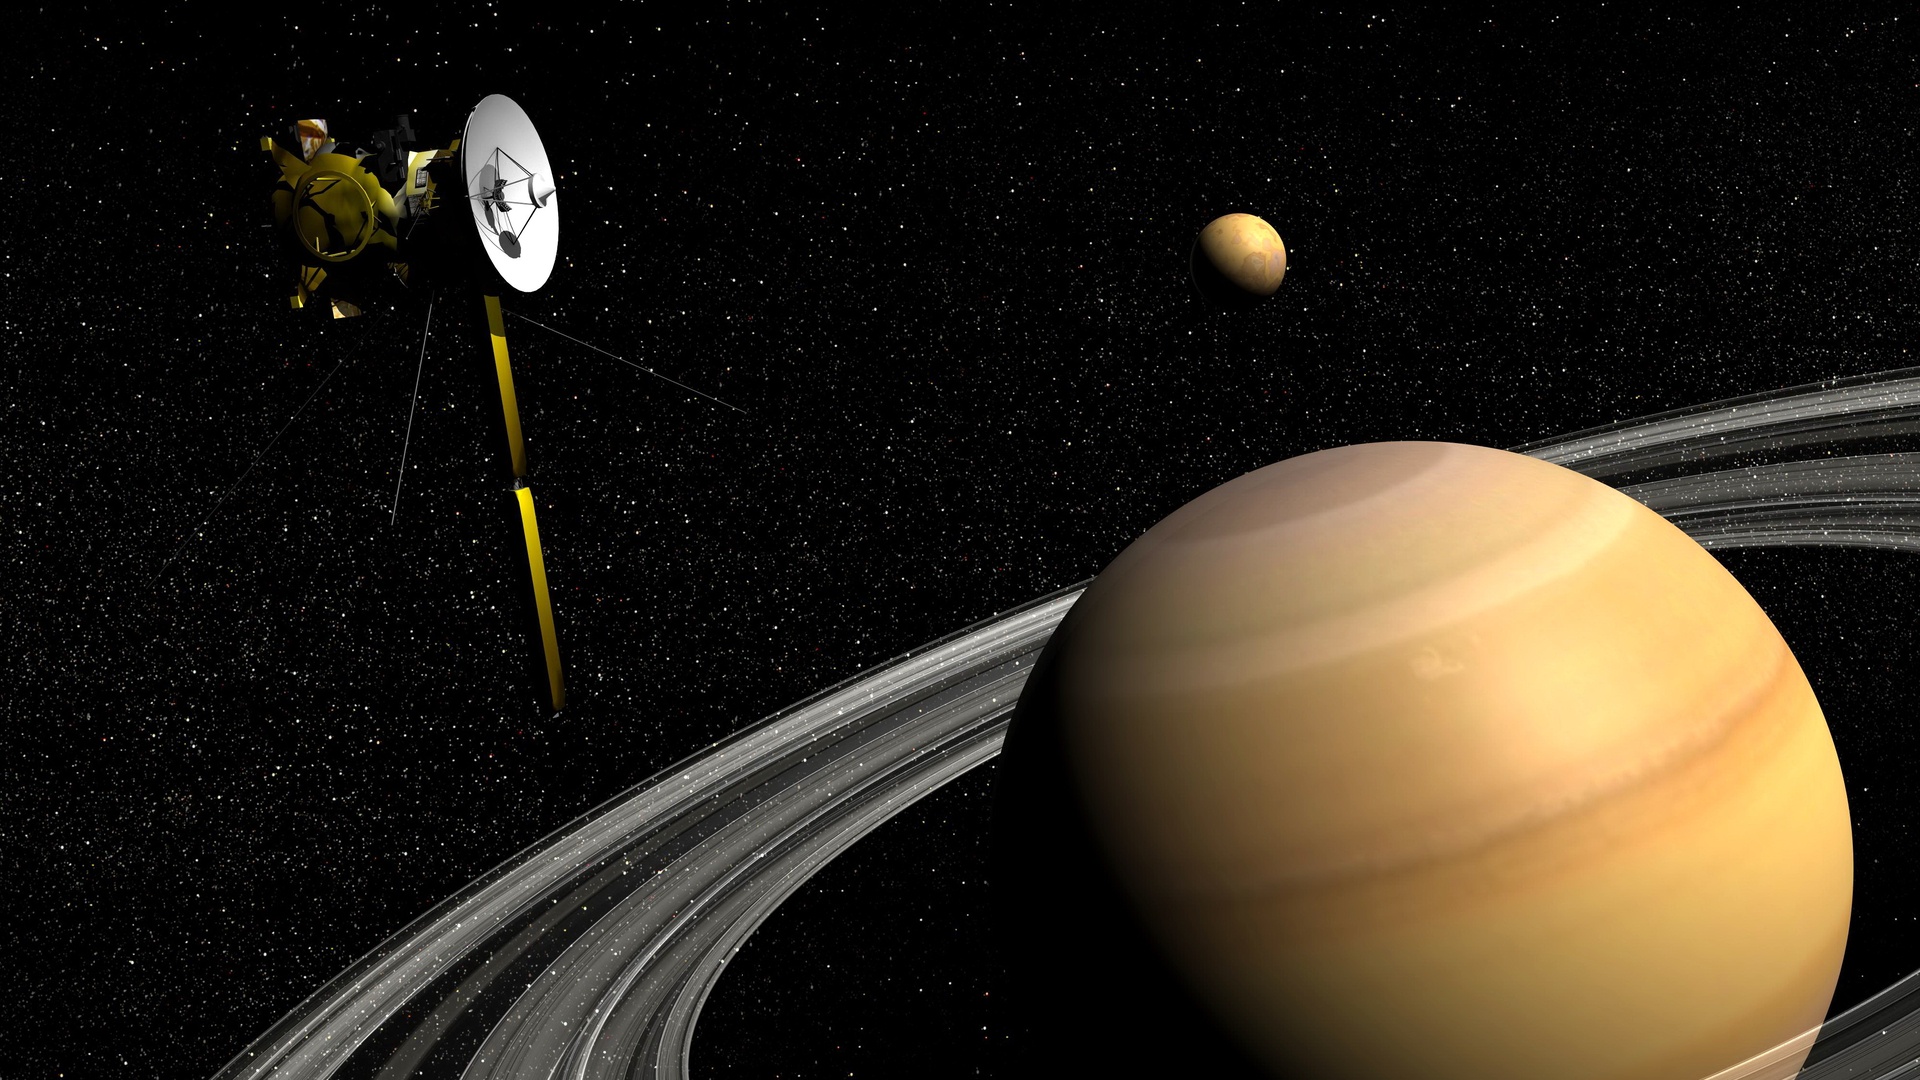 Самая большая система солнечной системы сатурн. Спутник Титан Планета Сатурн. Сатурн (Планета) спутники Сатурна. Спутники Сатурна Титан и Рея. Снимки титана с Кассини.